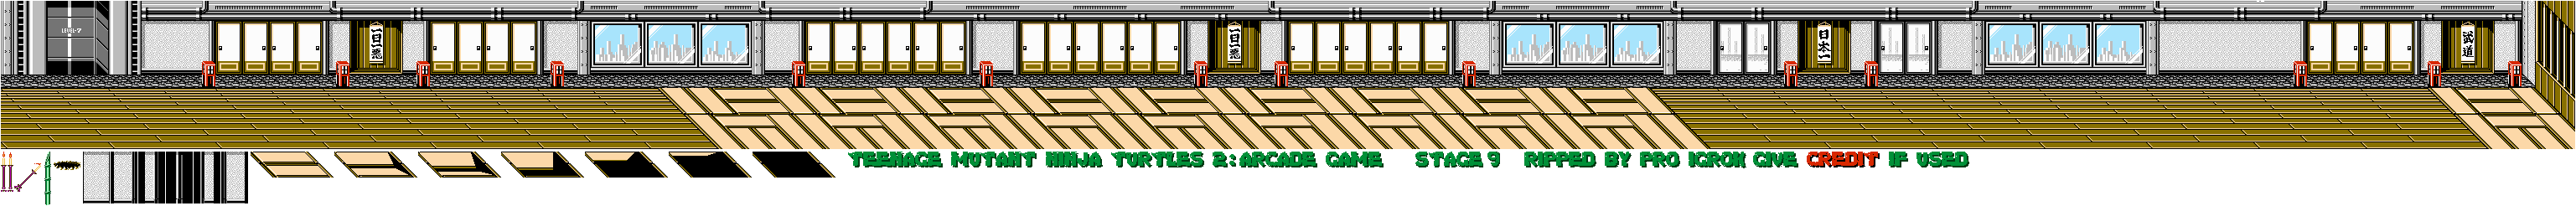 Teenage Mutant Ninja Turtles 2: The Arcade Game - Stage 09